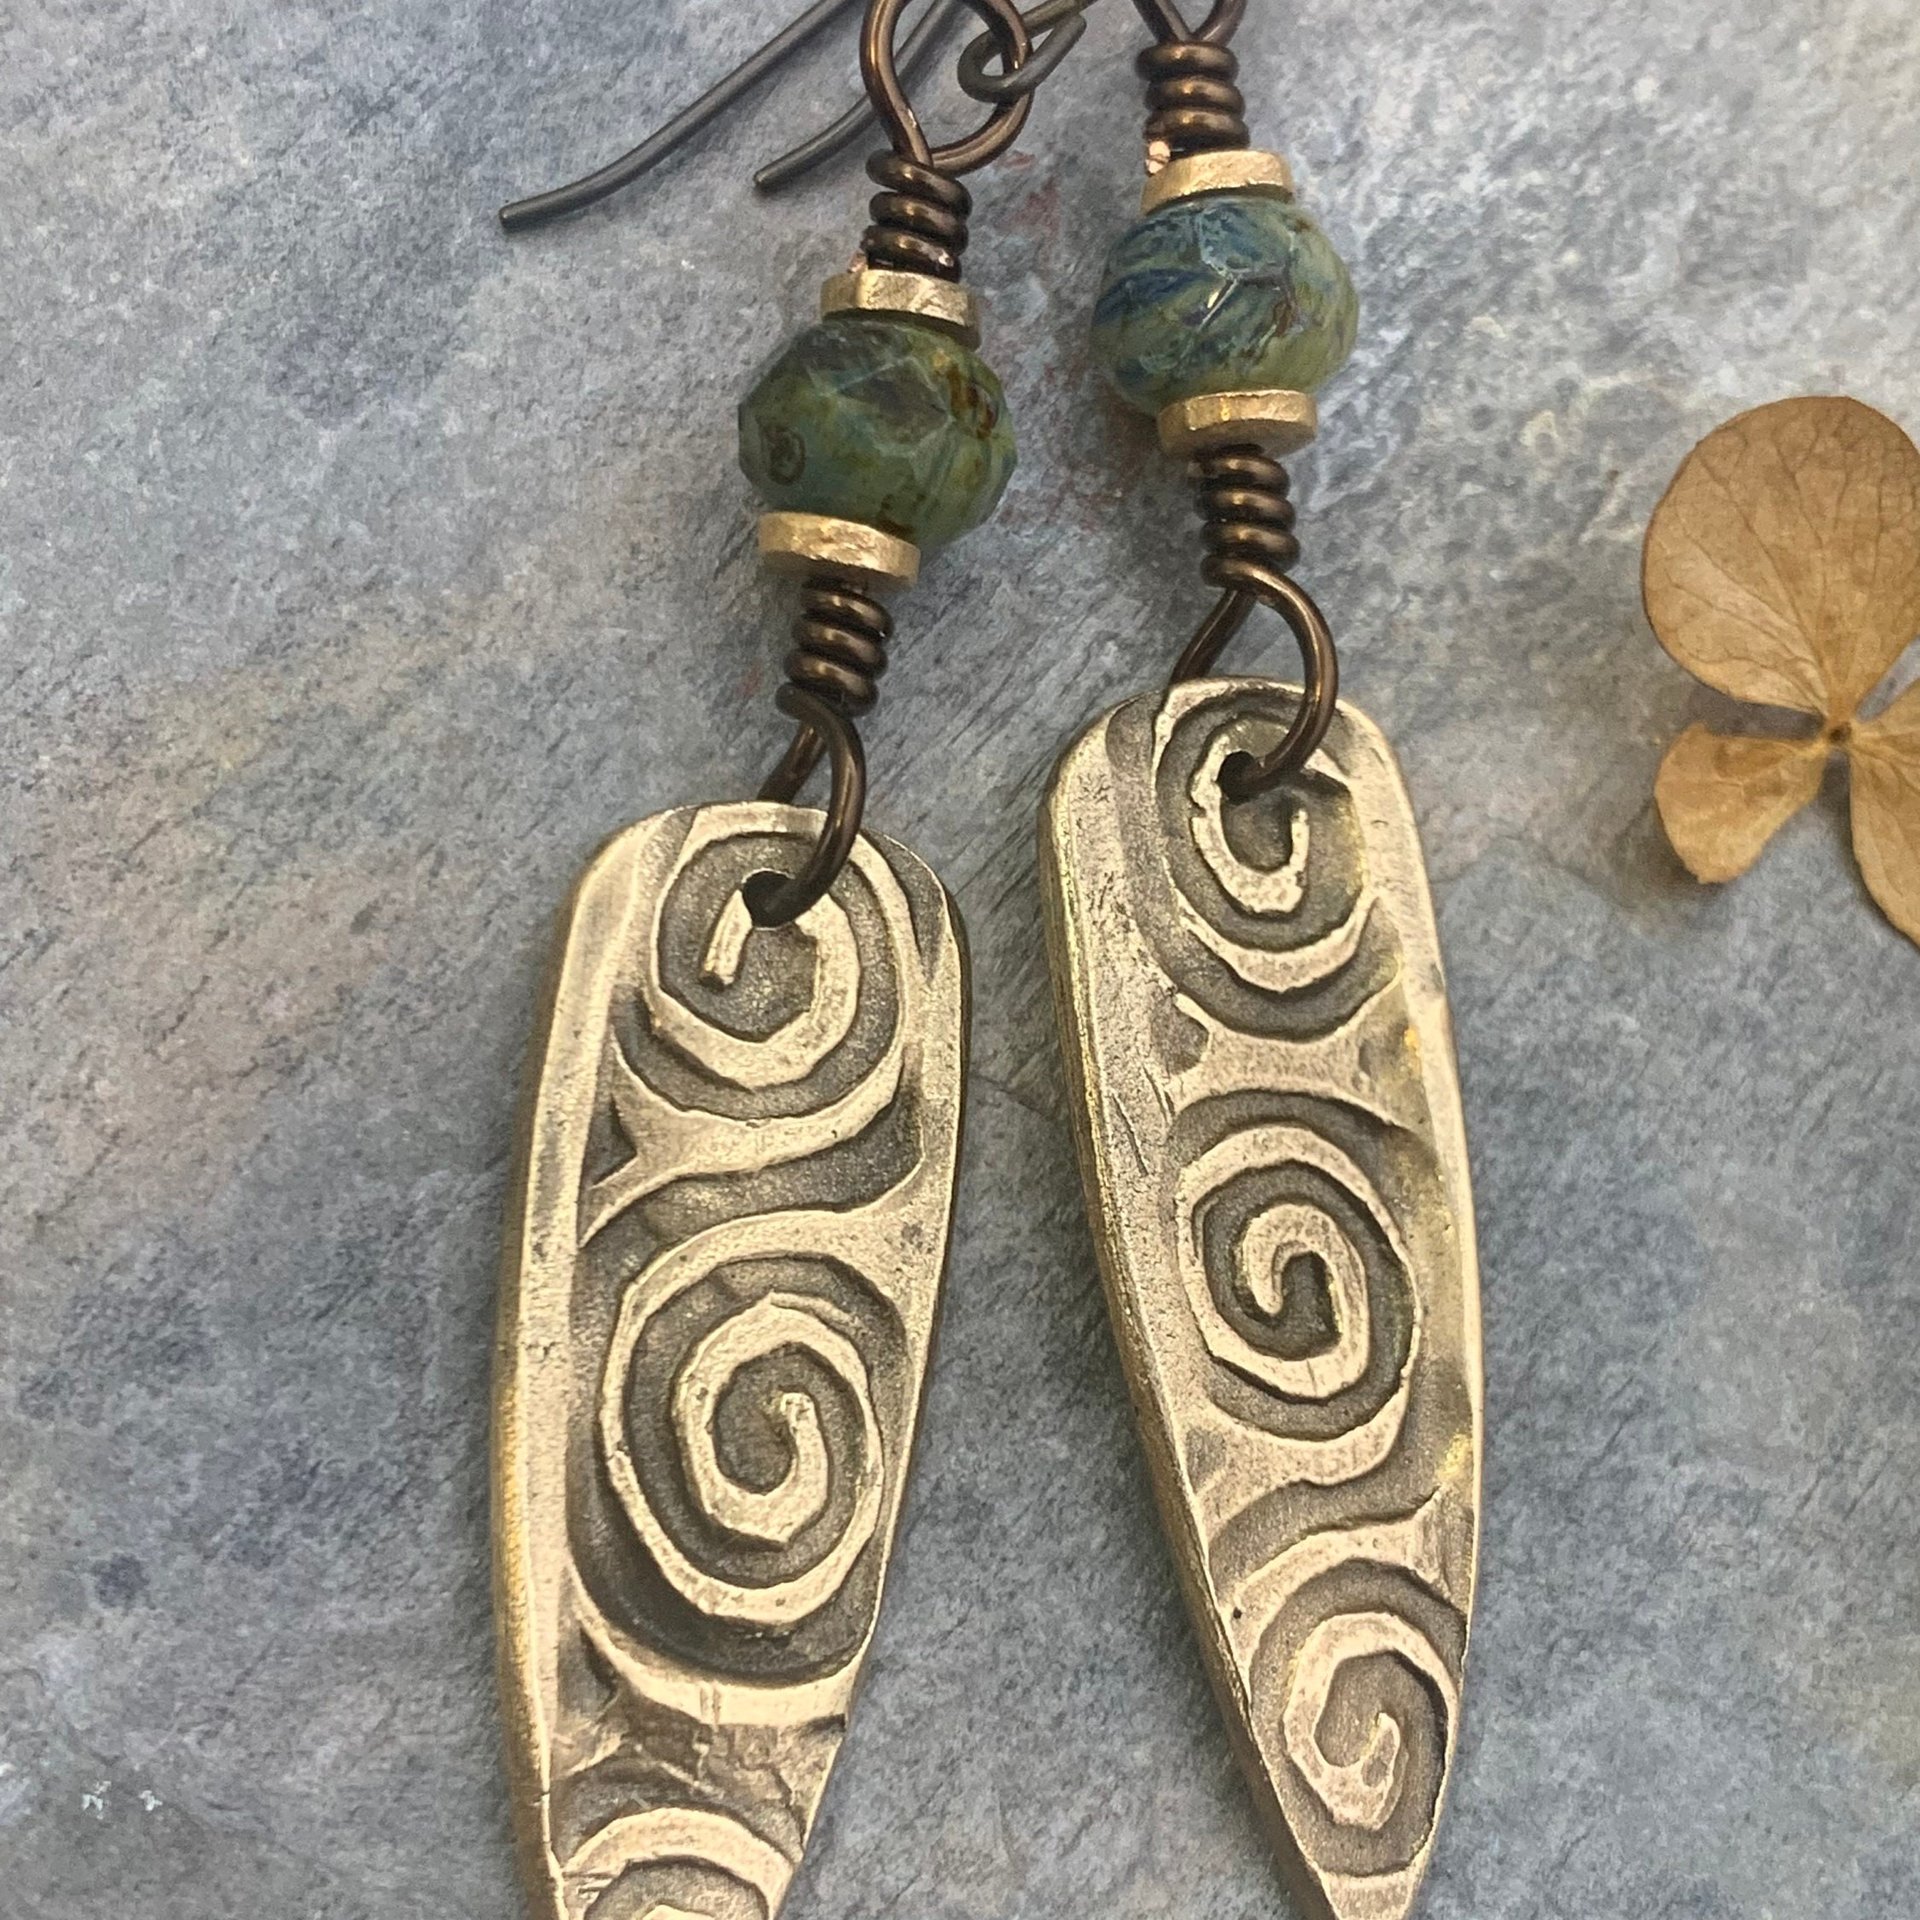 Bronze Shield Earrings, Irish Celtic Spiral, Czech Glass Beads, Hypoallergenic Ear Wires, Dagger Teardrop, Tribal Earthy Jewelry, Handmade